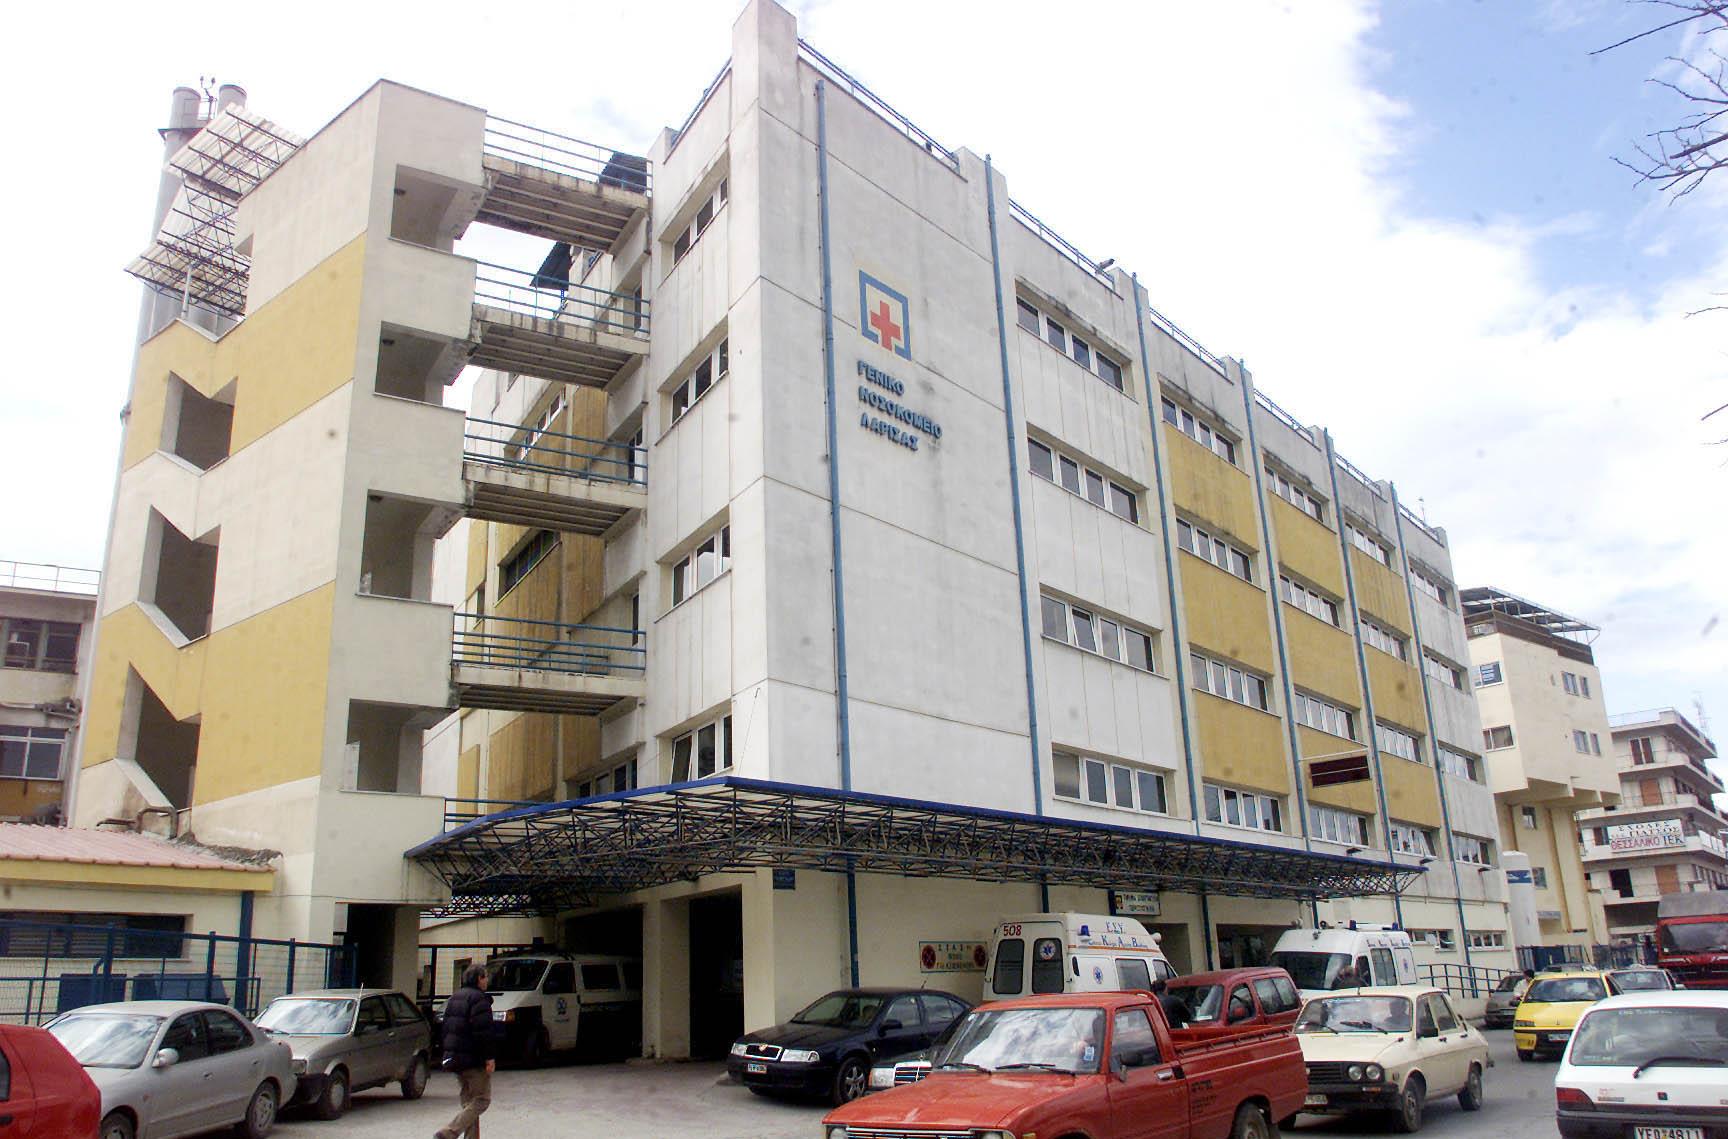 Κλοπή ιατρικού εξοπλισμού και από το Πανεπιστημιακό Νοσοκομείο Λάρισας